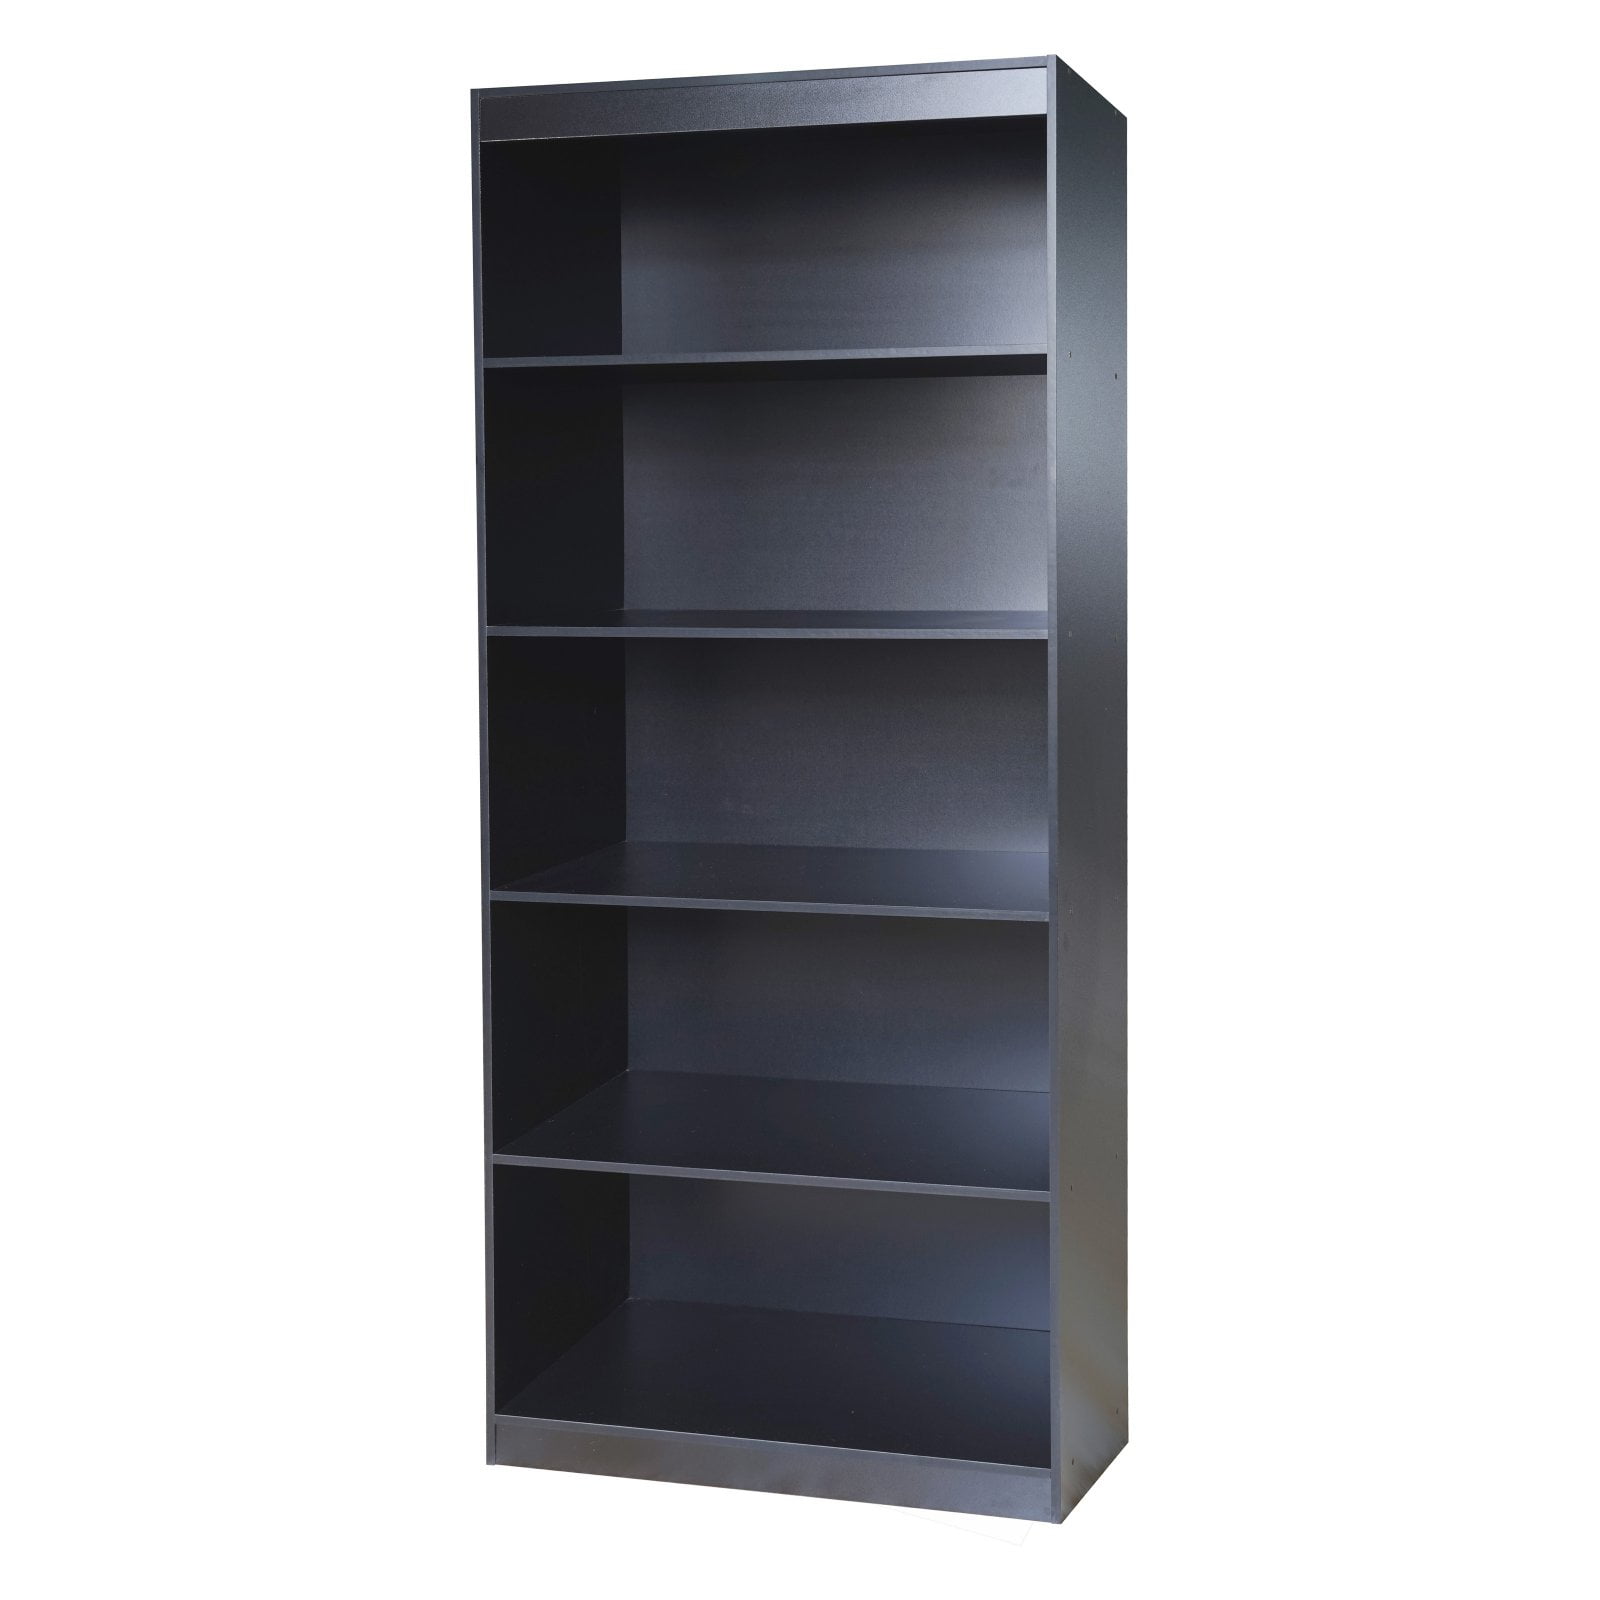 Minimalist Black Bookcase Walmart for Small Space